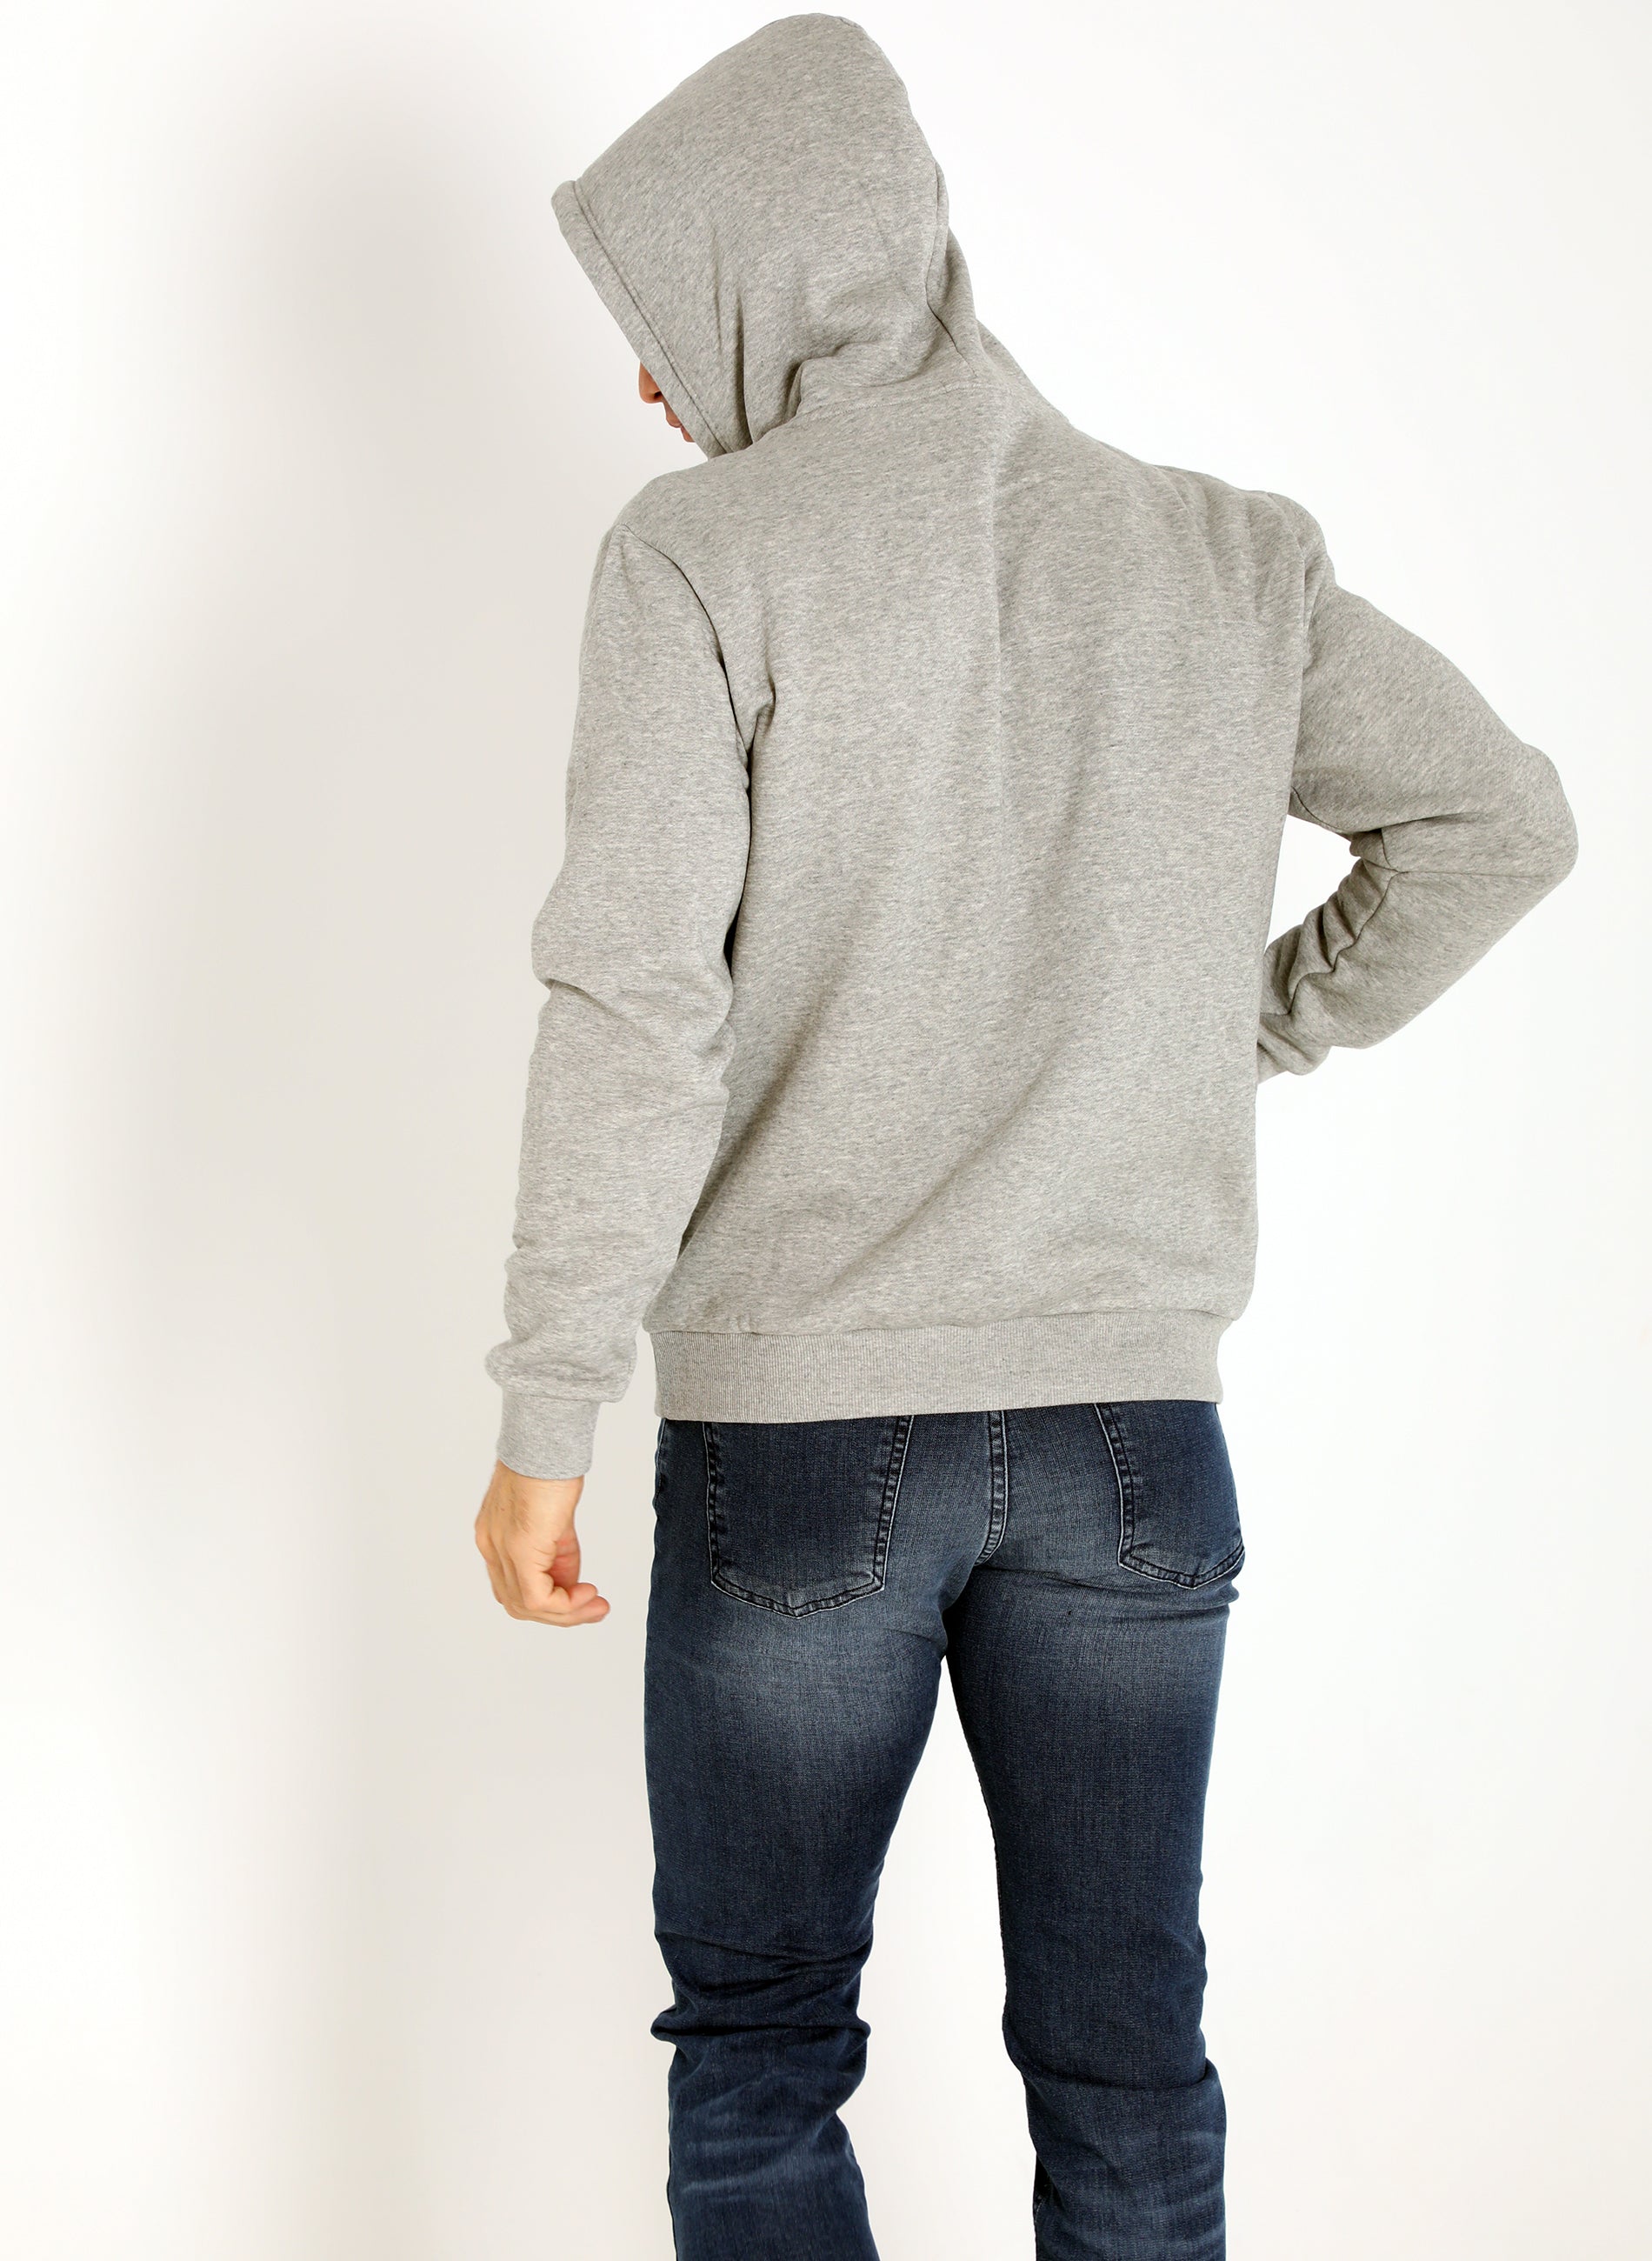 Men's Gray Hooded Sweatshirt